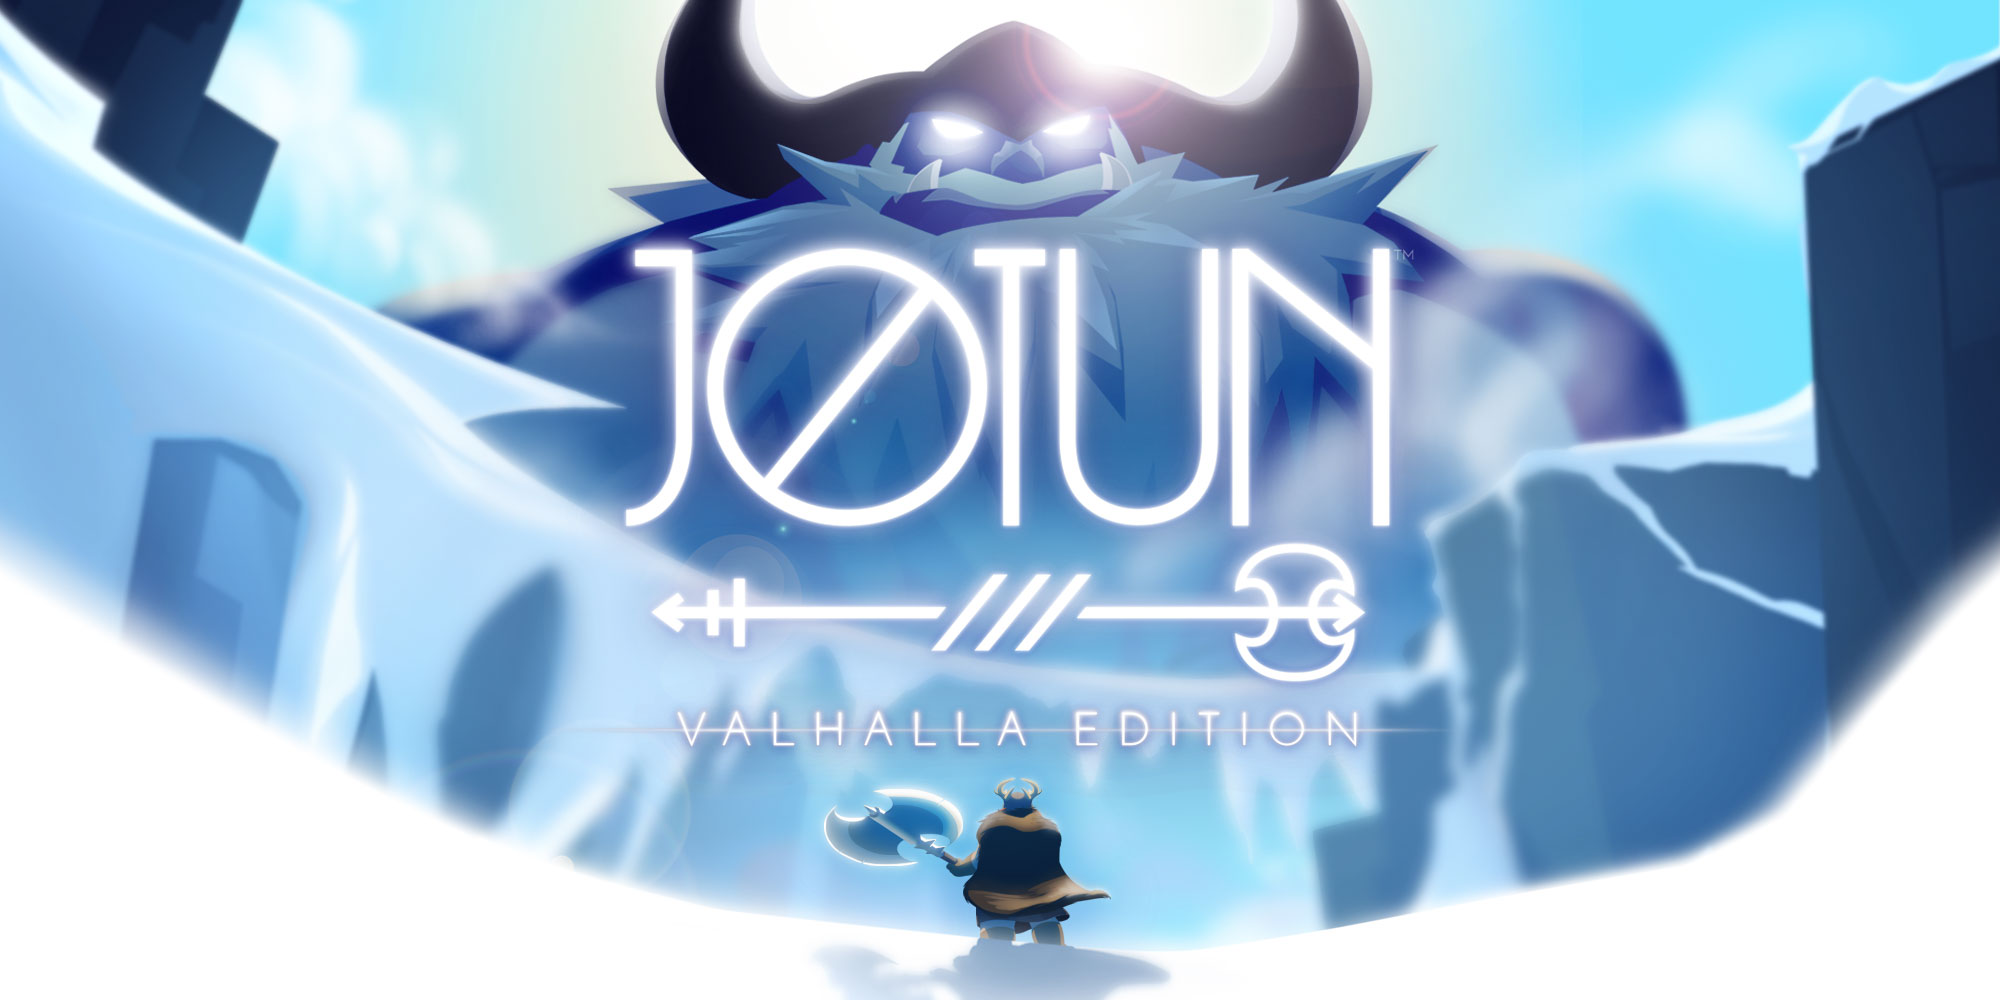 jotun valhalla edition release date